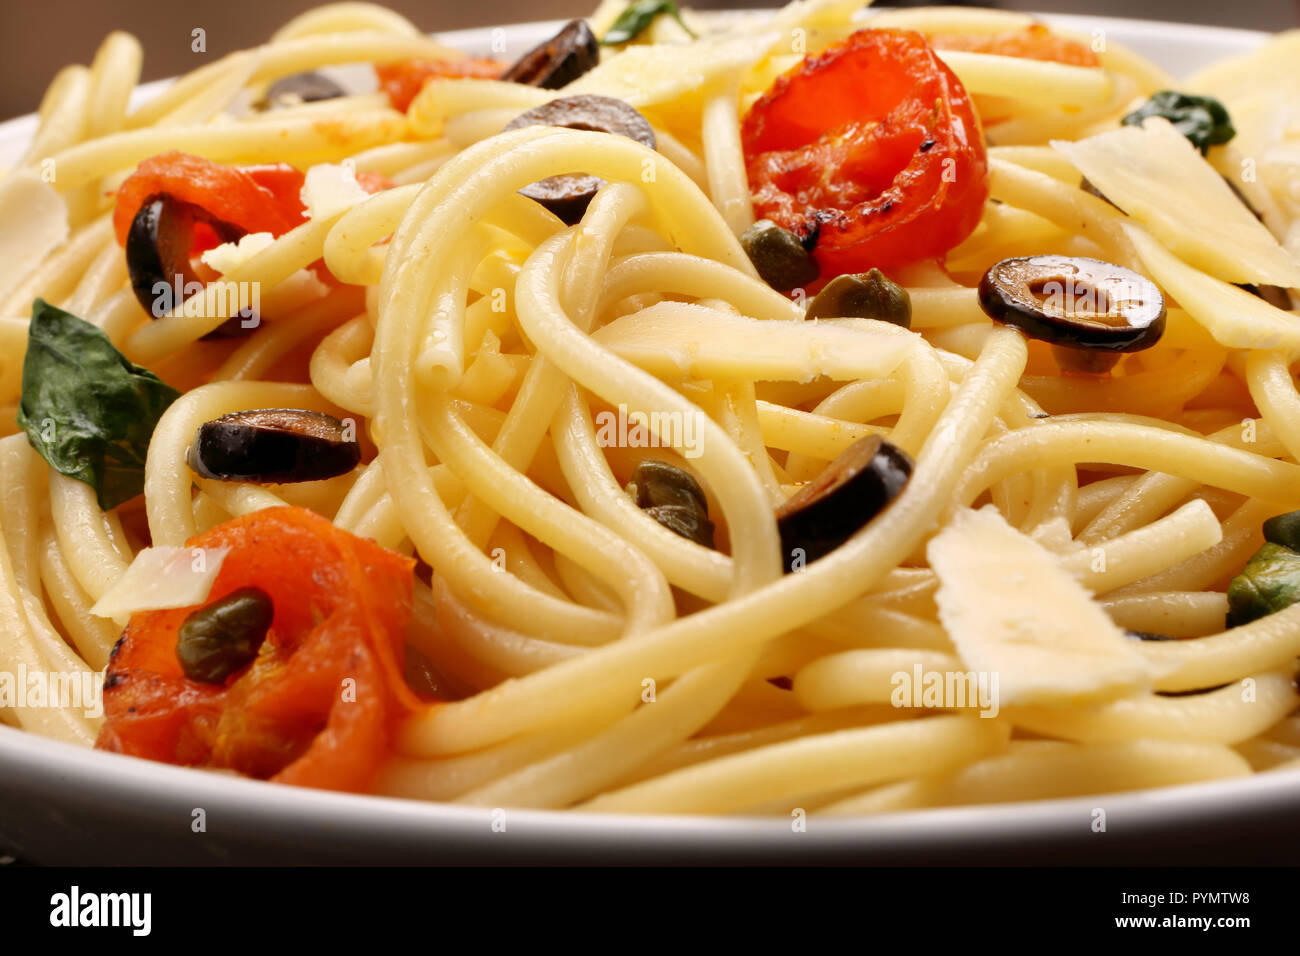 Spaghetti Alla Puttanesca, pasta with tomato and olives Stock Photo